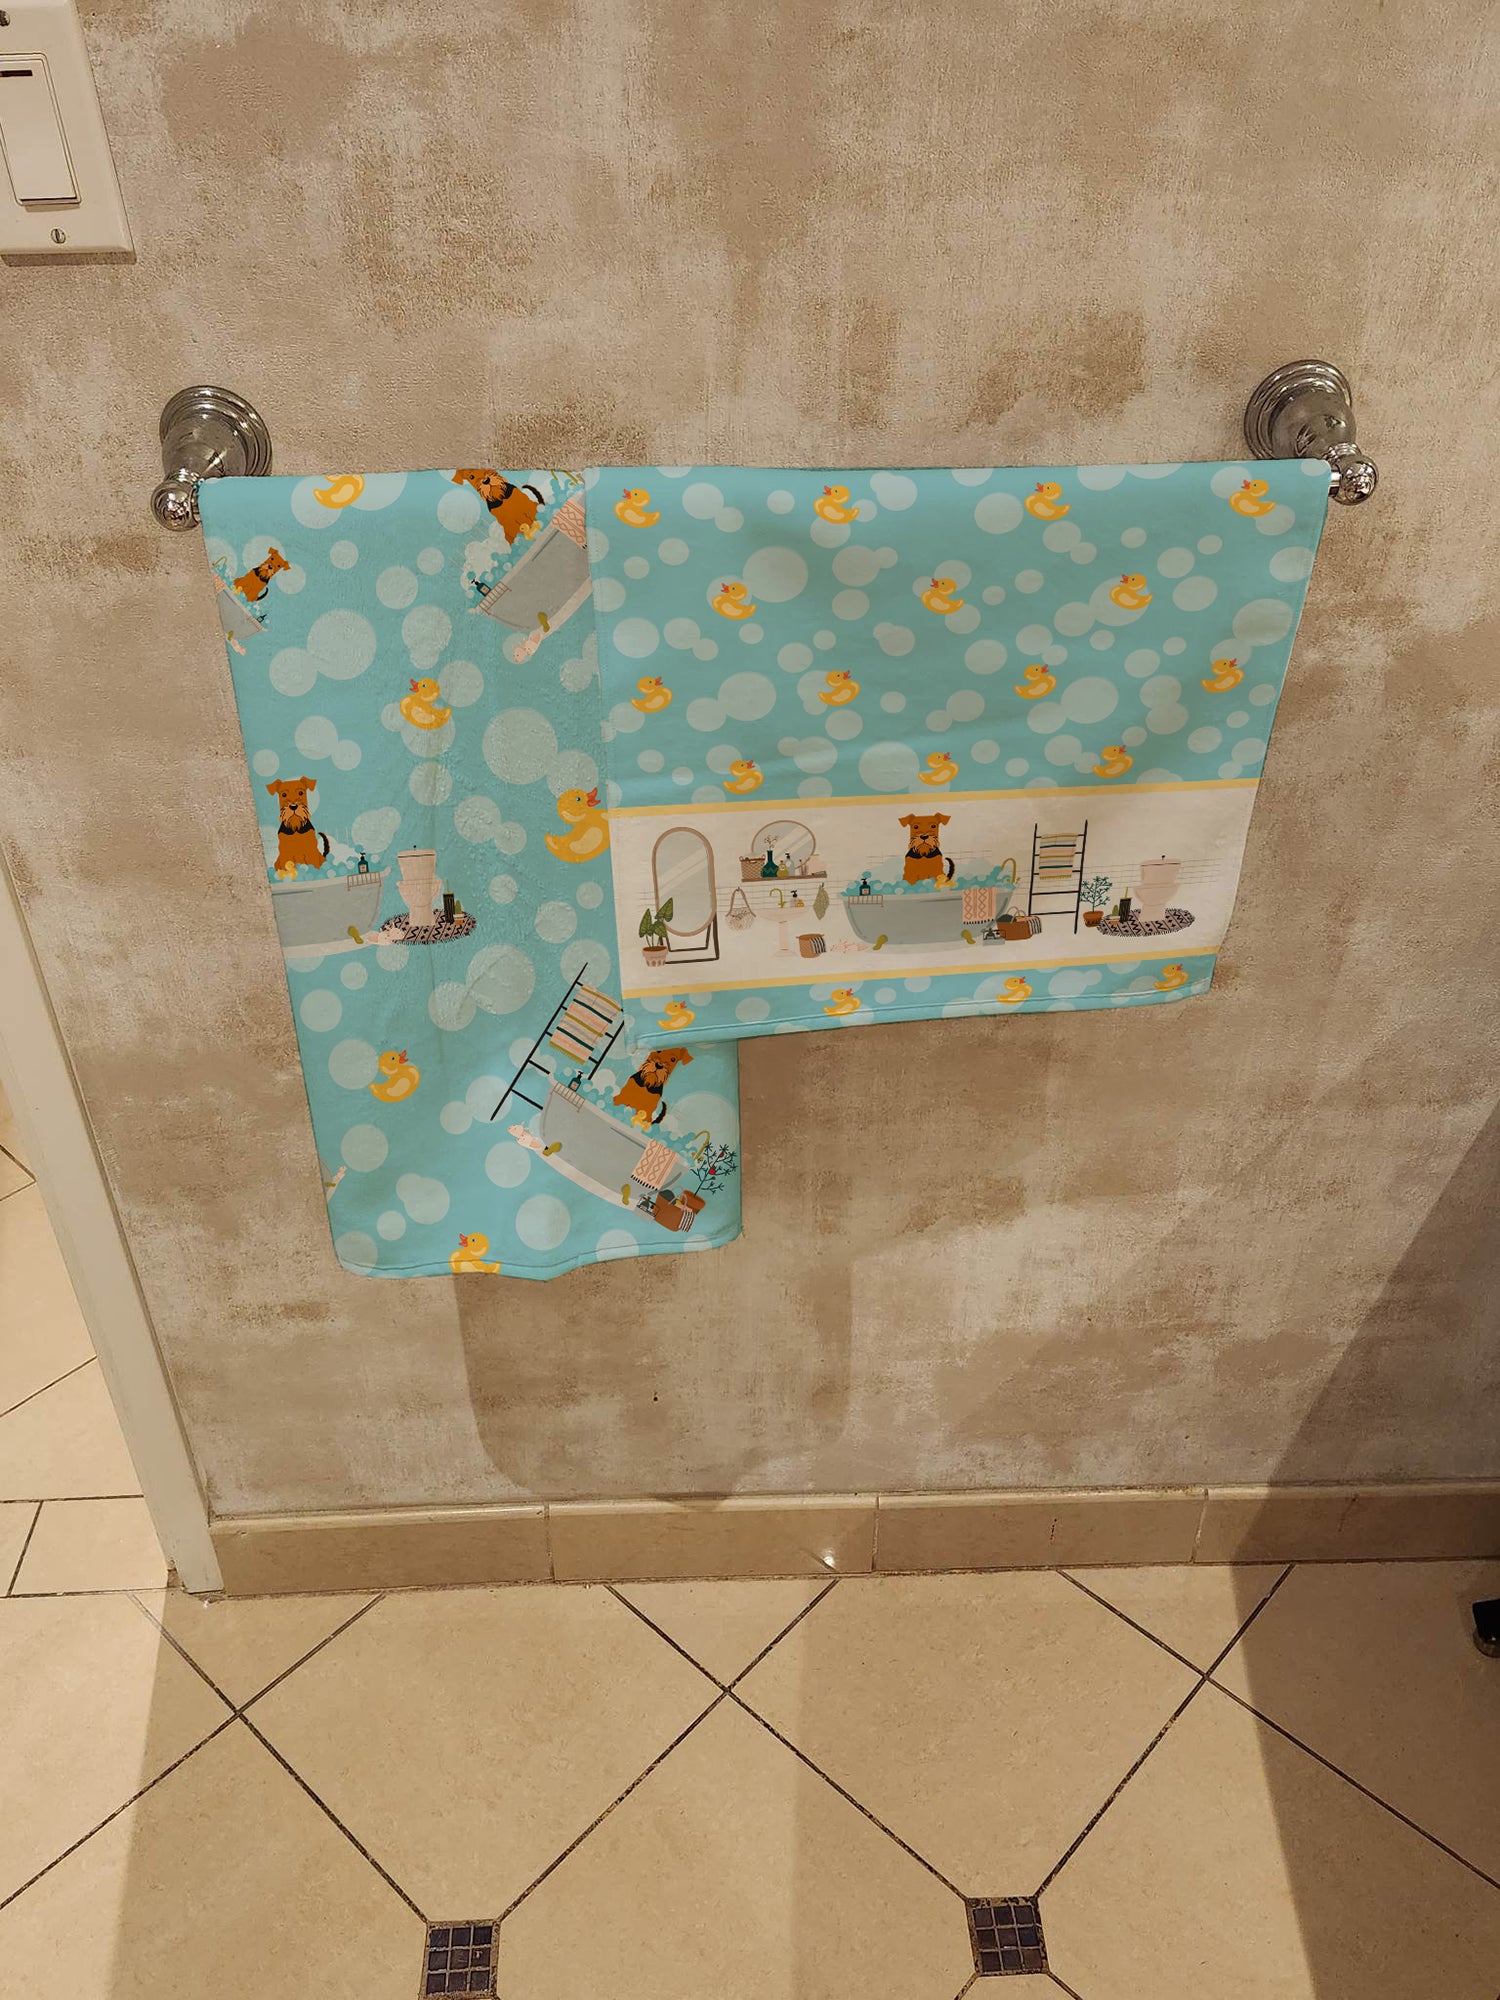 Airedale in Bathtub Bath Towel Large